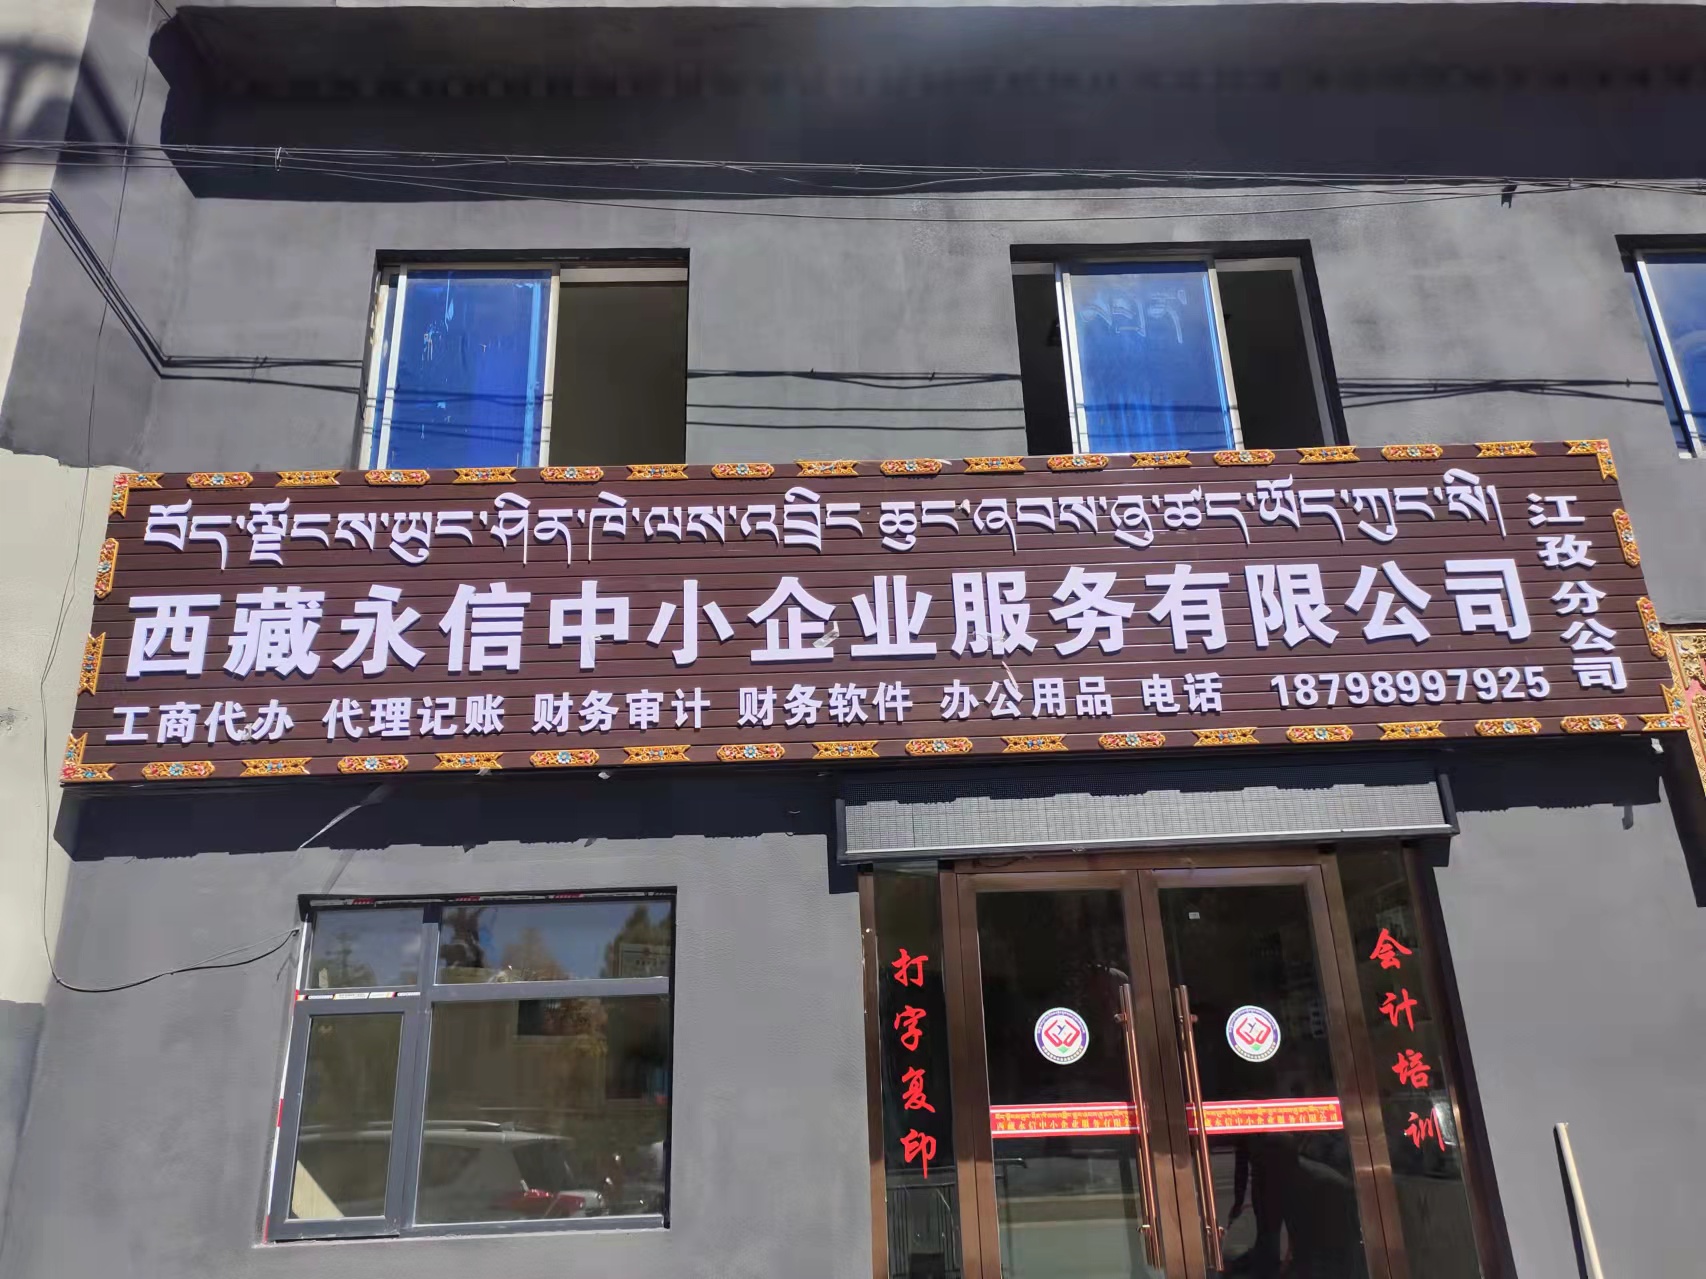 西藏永信中小企业服务有限公司江孜分公司10月12日正式开业啦